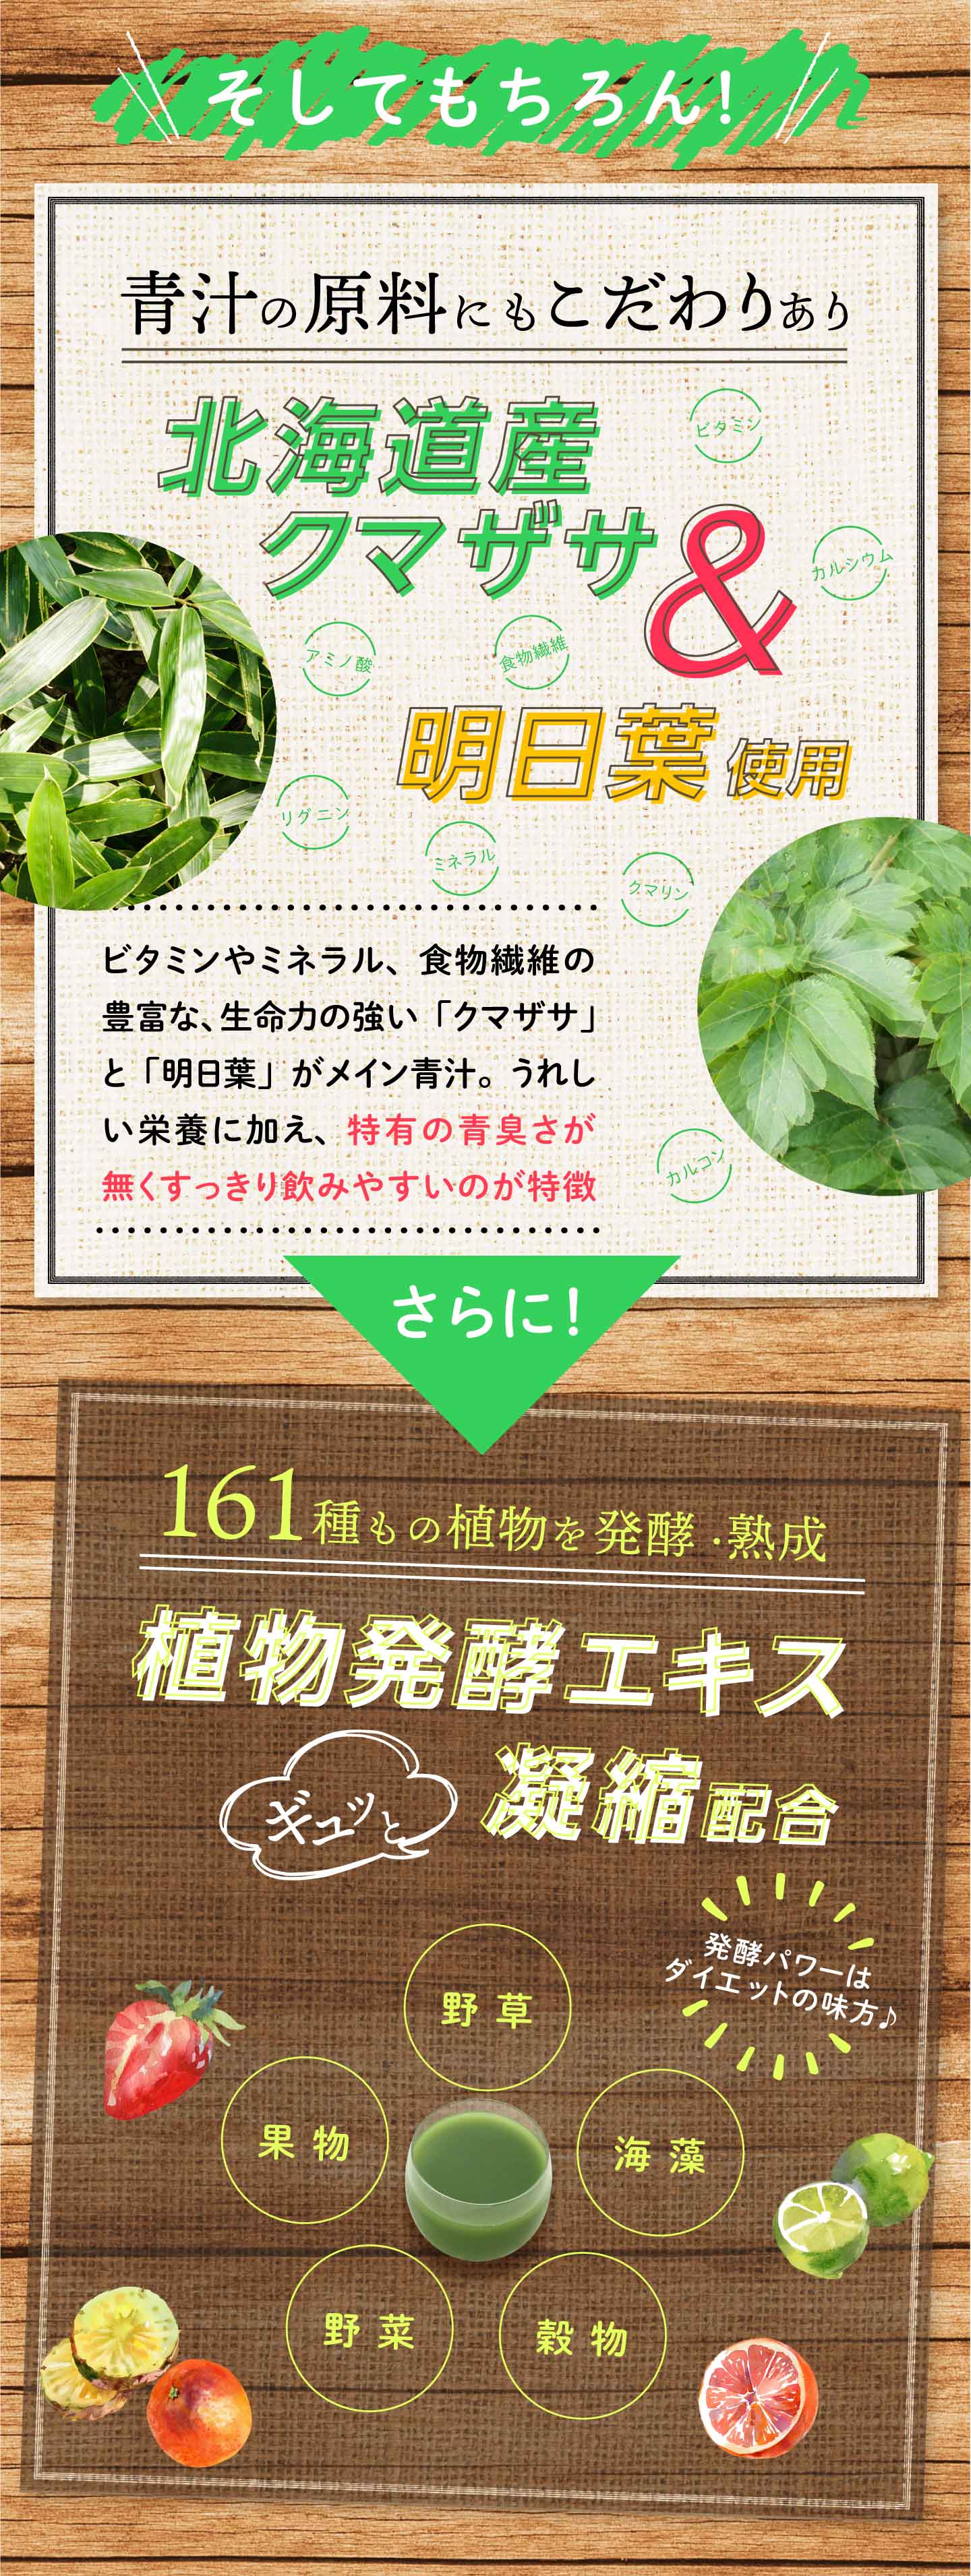 リファータ フルーツと野菜のおいしい青汁は、北海道産クマザサと明日葉使用。さらに！161種もの植物から発酵・熟成したエキスを凝縮配合